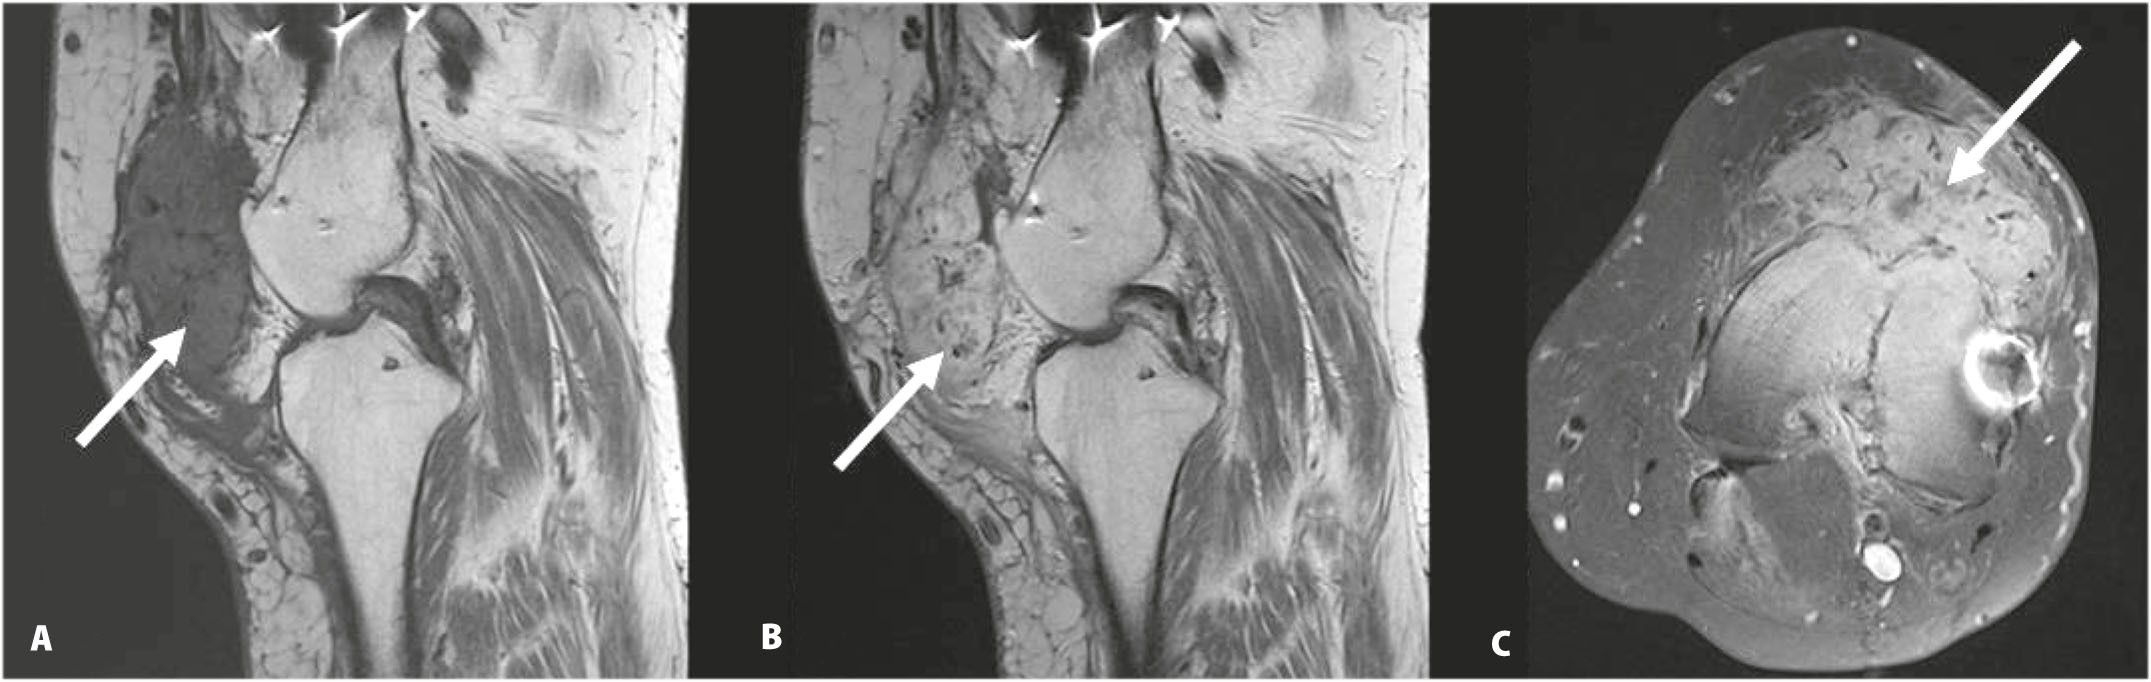 Une localisation métastatique inhabituelle d’un carcinome rénal à cellules claires : la patella-Figure 3